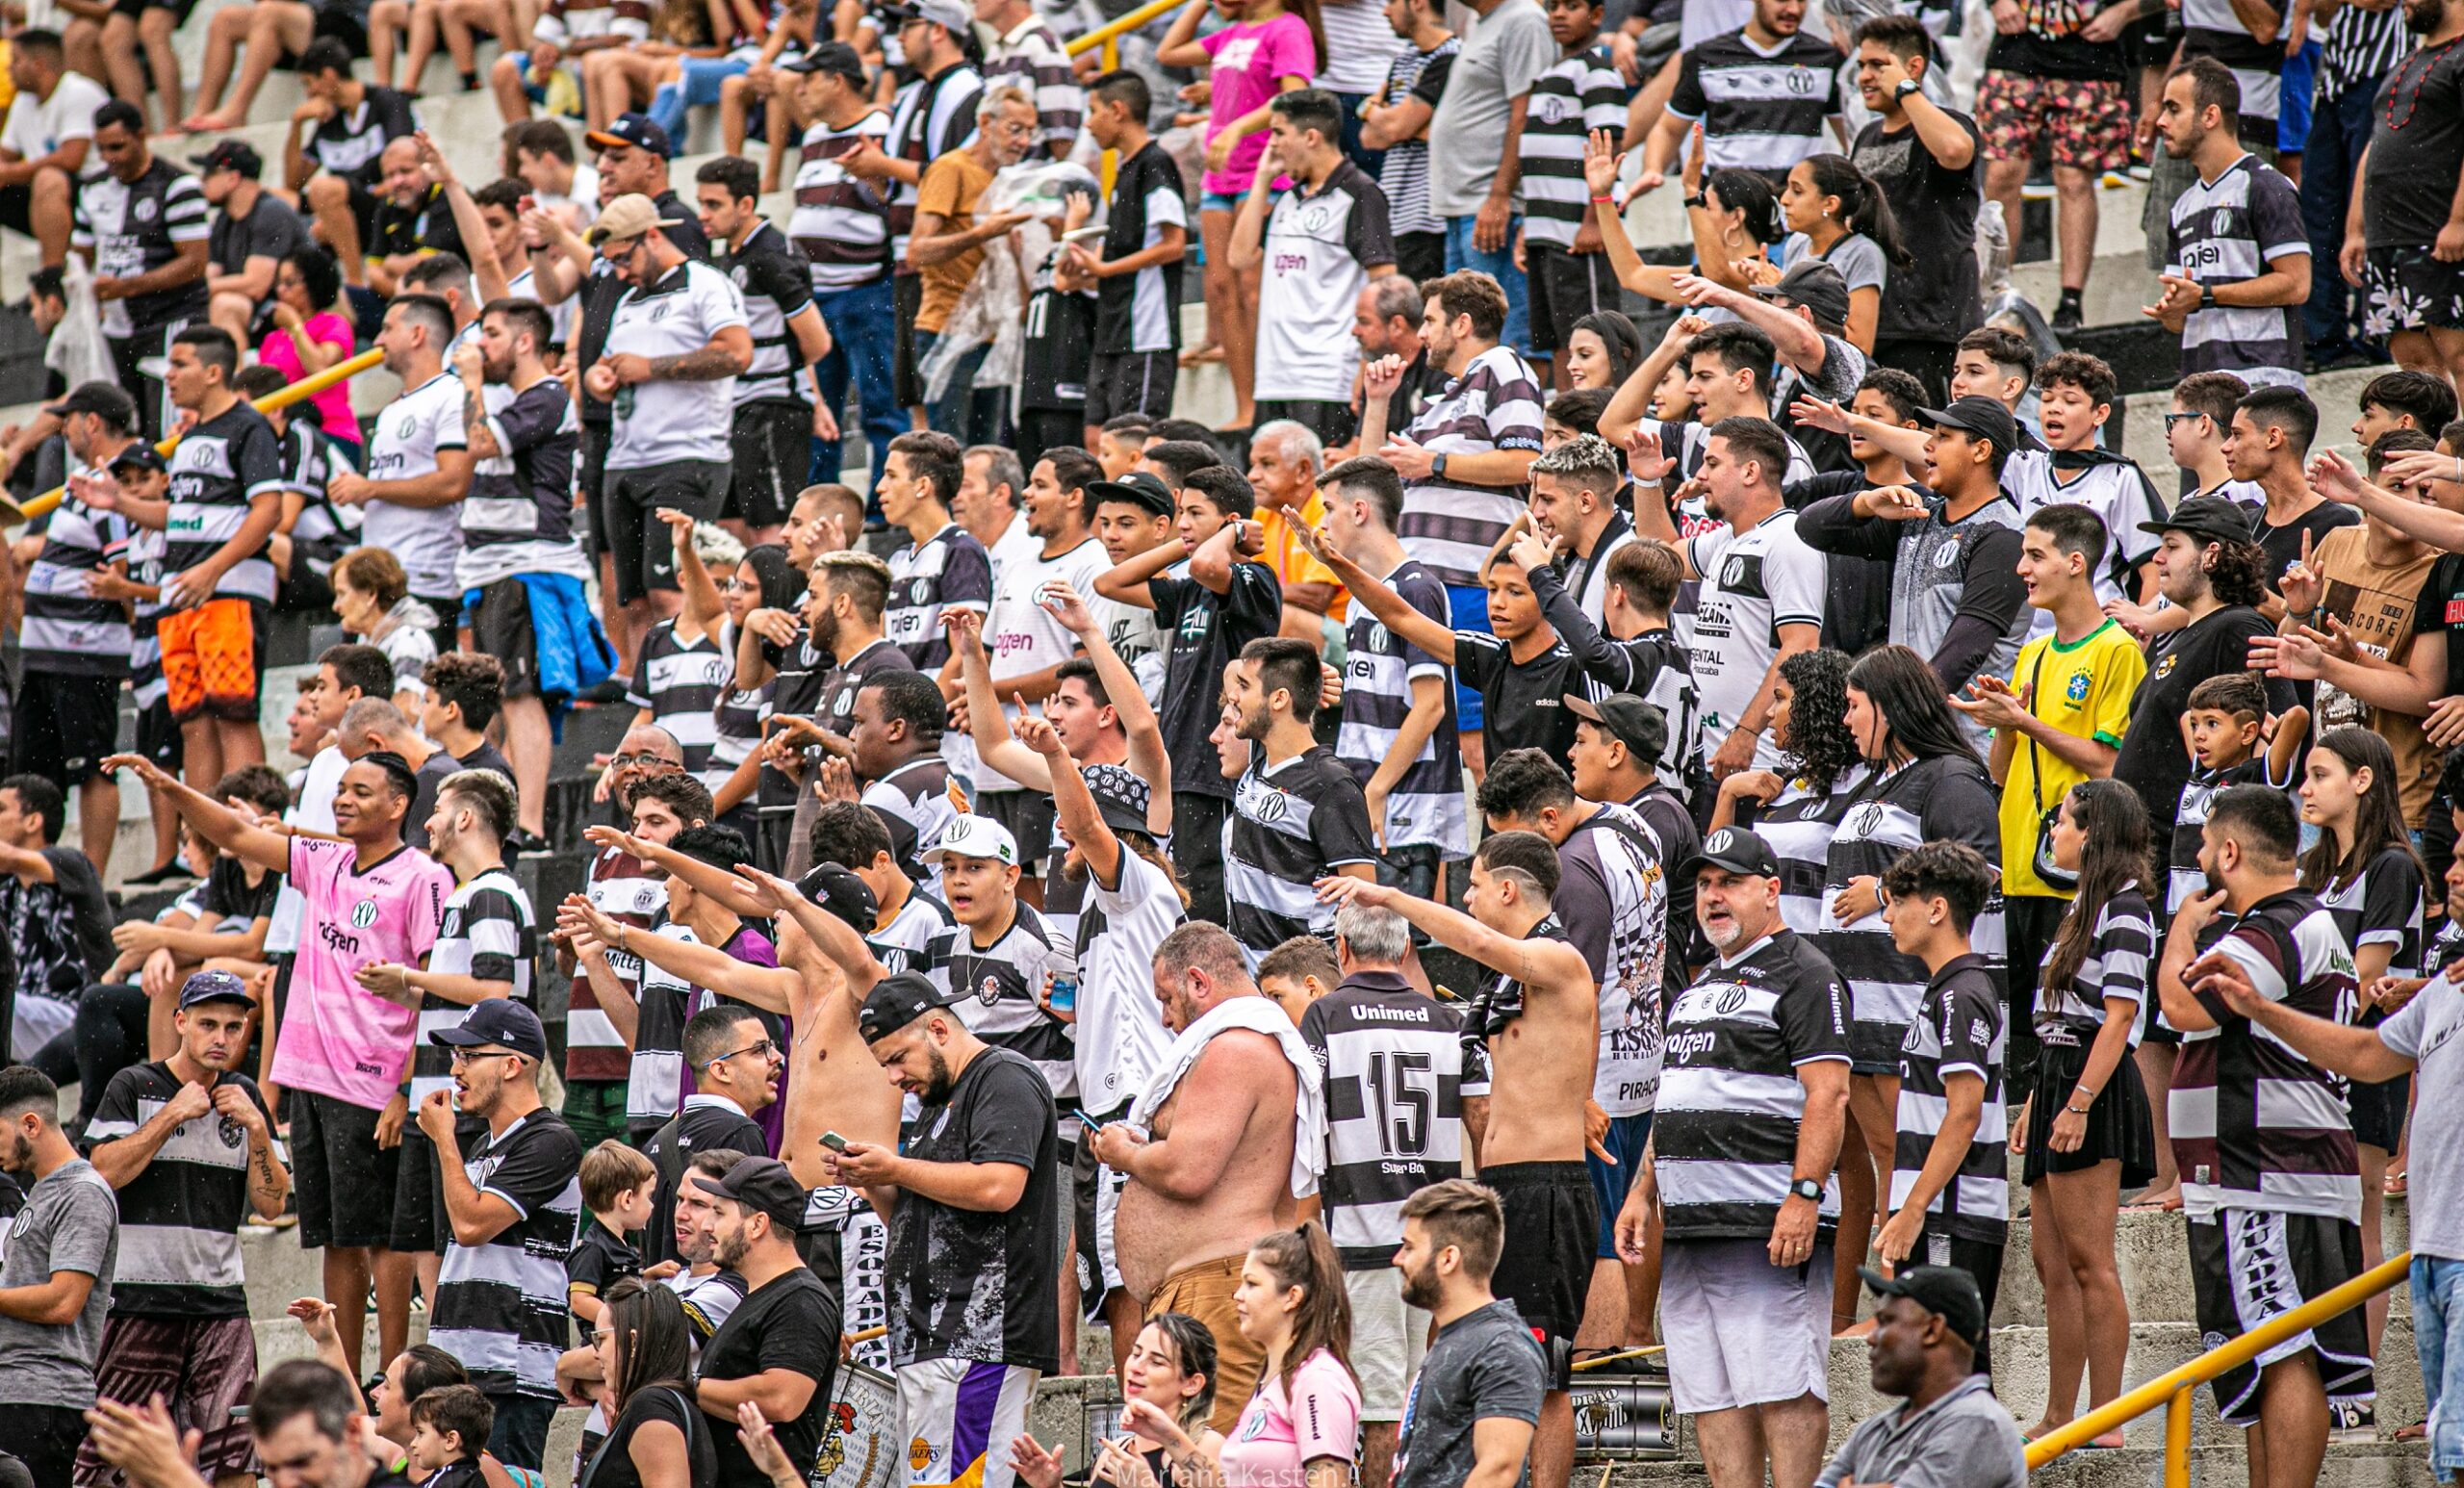 Imagem colorida mostra a grande torcida do XV de Piracicaba dentro do estádio Barão da Serra Negra. As pessoas estão vestidas com a camisa do alvinegro e agitam as mãos para incentivar o time em campo